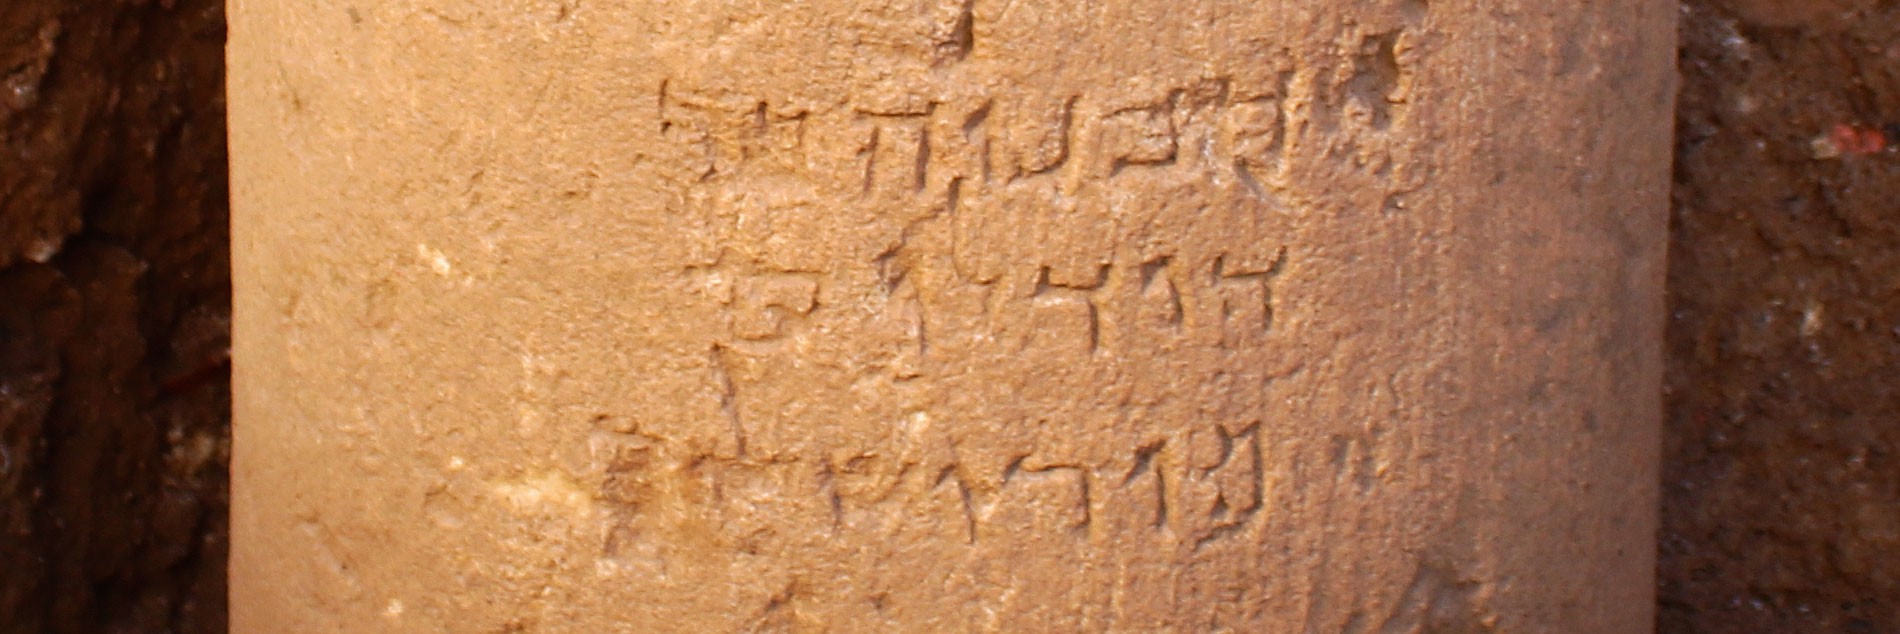 נחשפה כתובת אבן בת 2000 שנה המציינת לראשונה את שמה המלא של ירושלים 